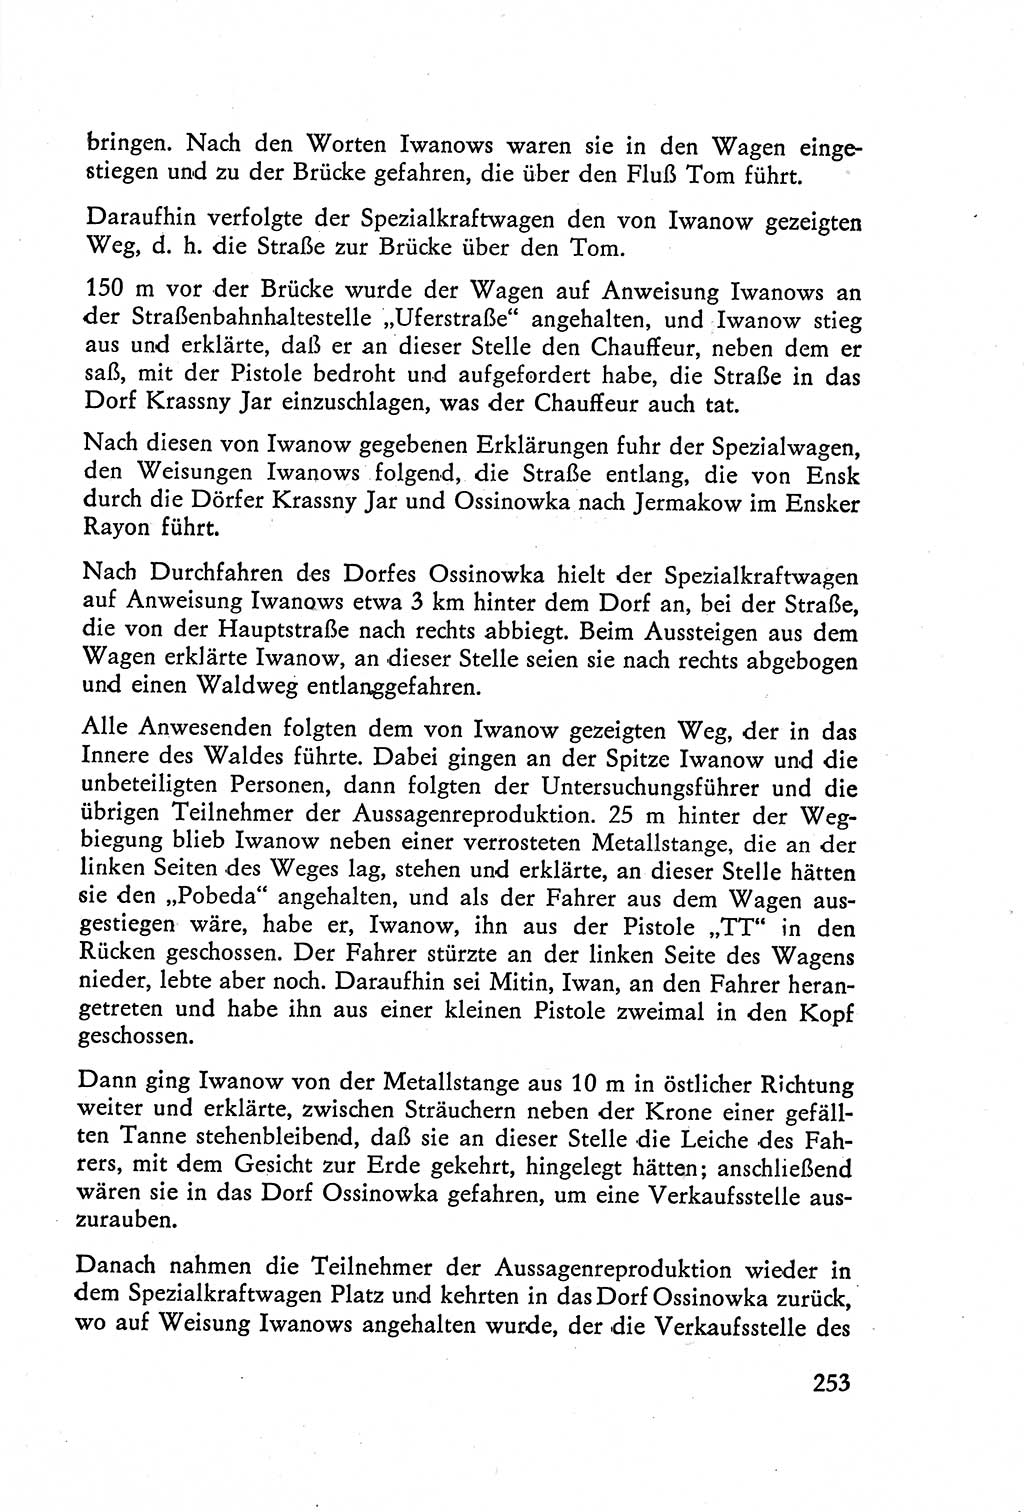 Die Vernehmung [Deutsche Demokratische Republik (DDR)] 1960, Seite 253 (Vern. DDR 1960, S. 253)